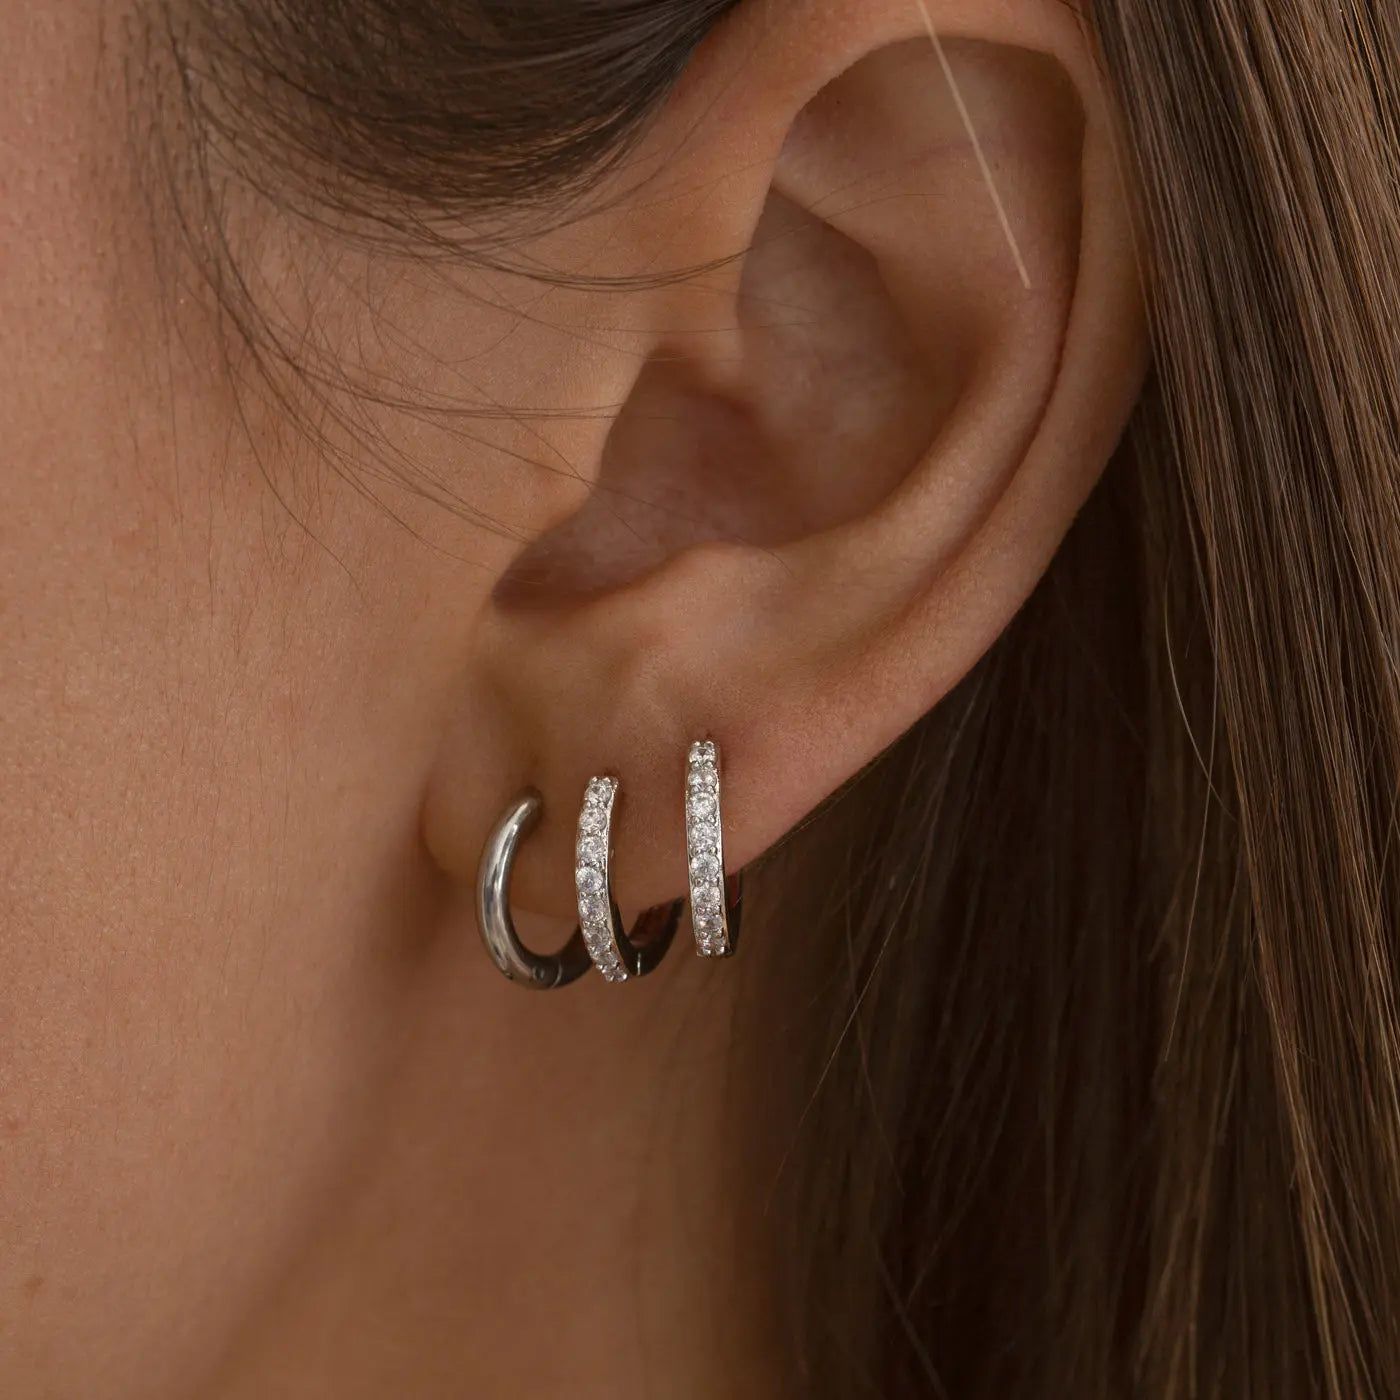 Harper - Bøjle 12 mm øreringe i rustfrit stål